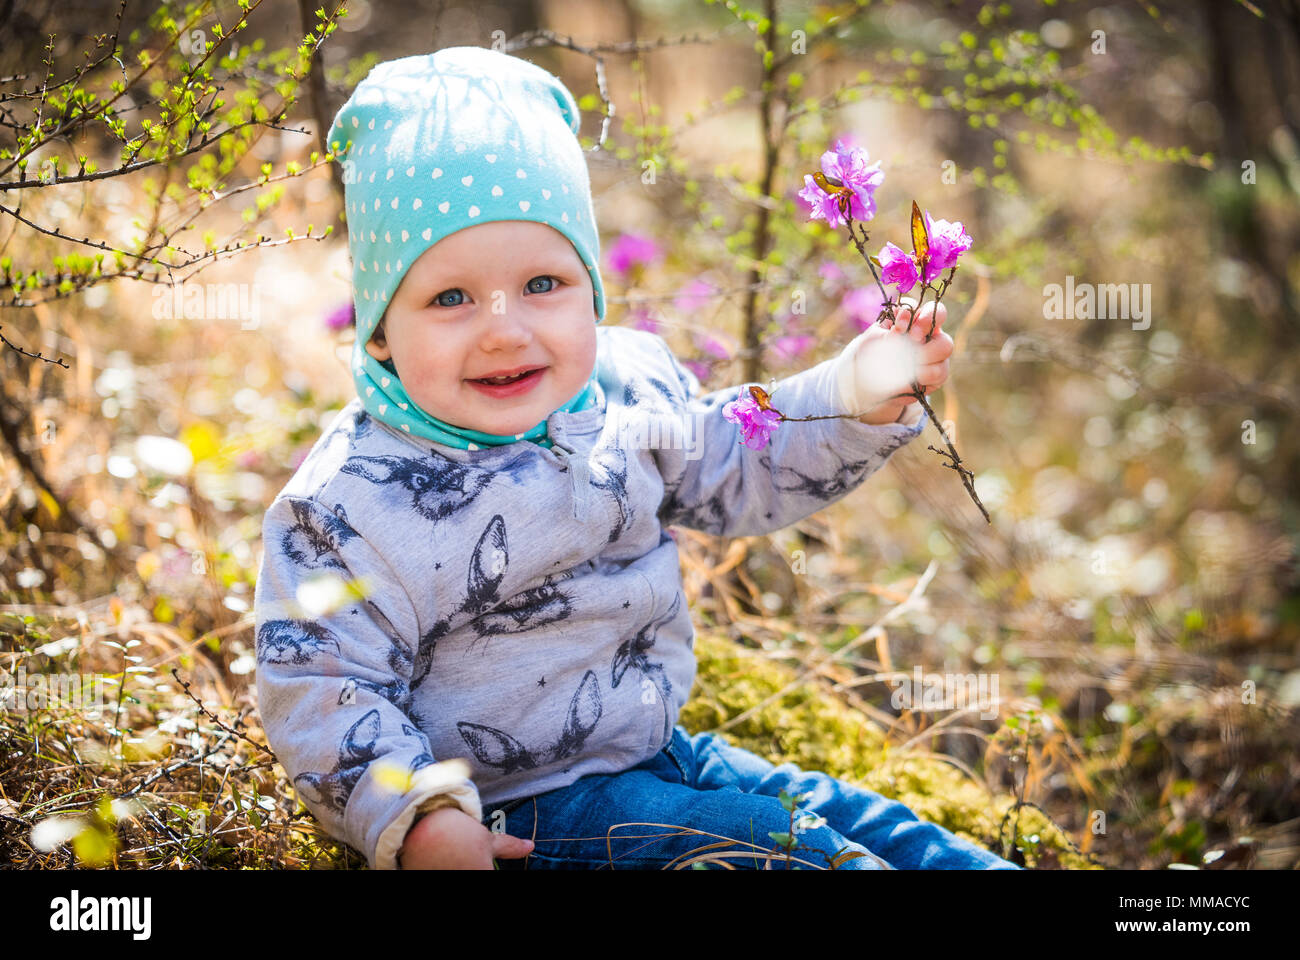 Infanzia felice. Baby girl ritratto all'aperto nella foresta Foto Stock